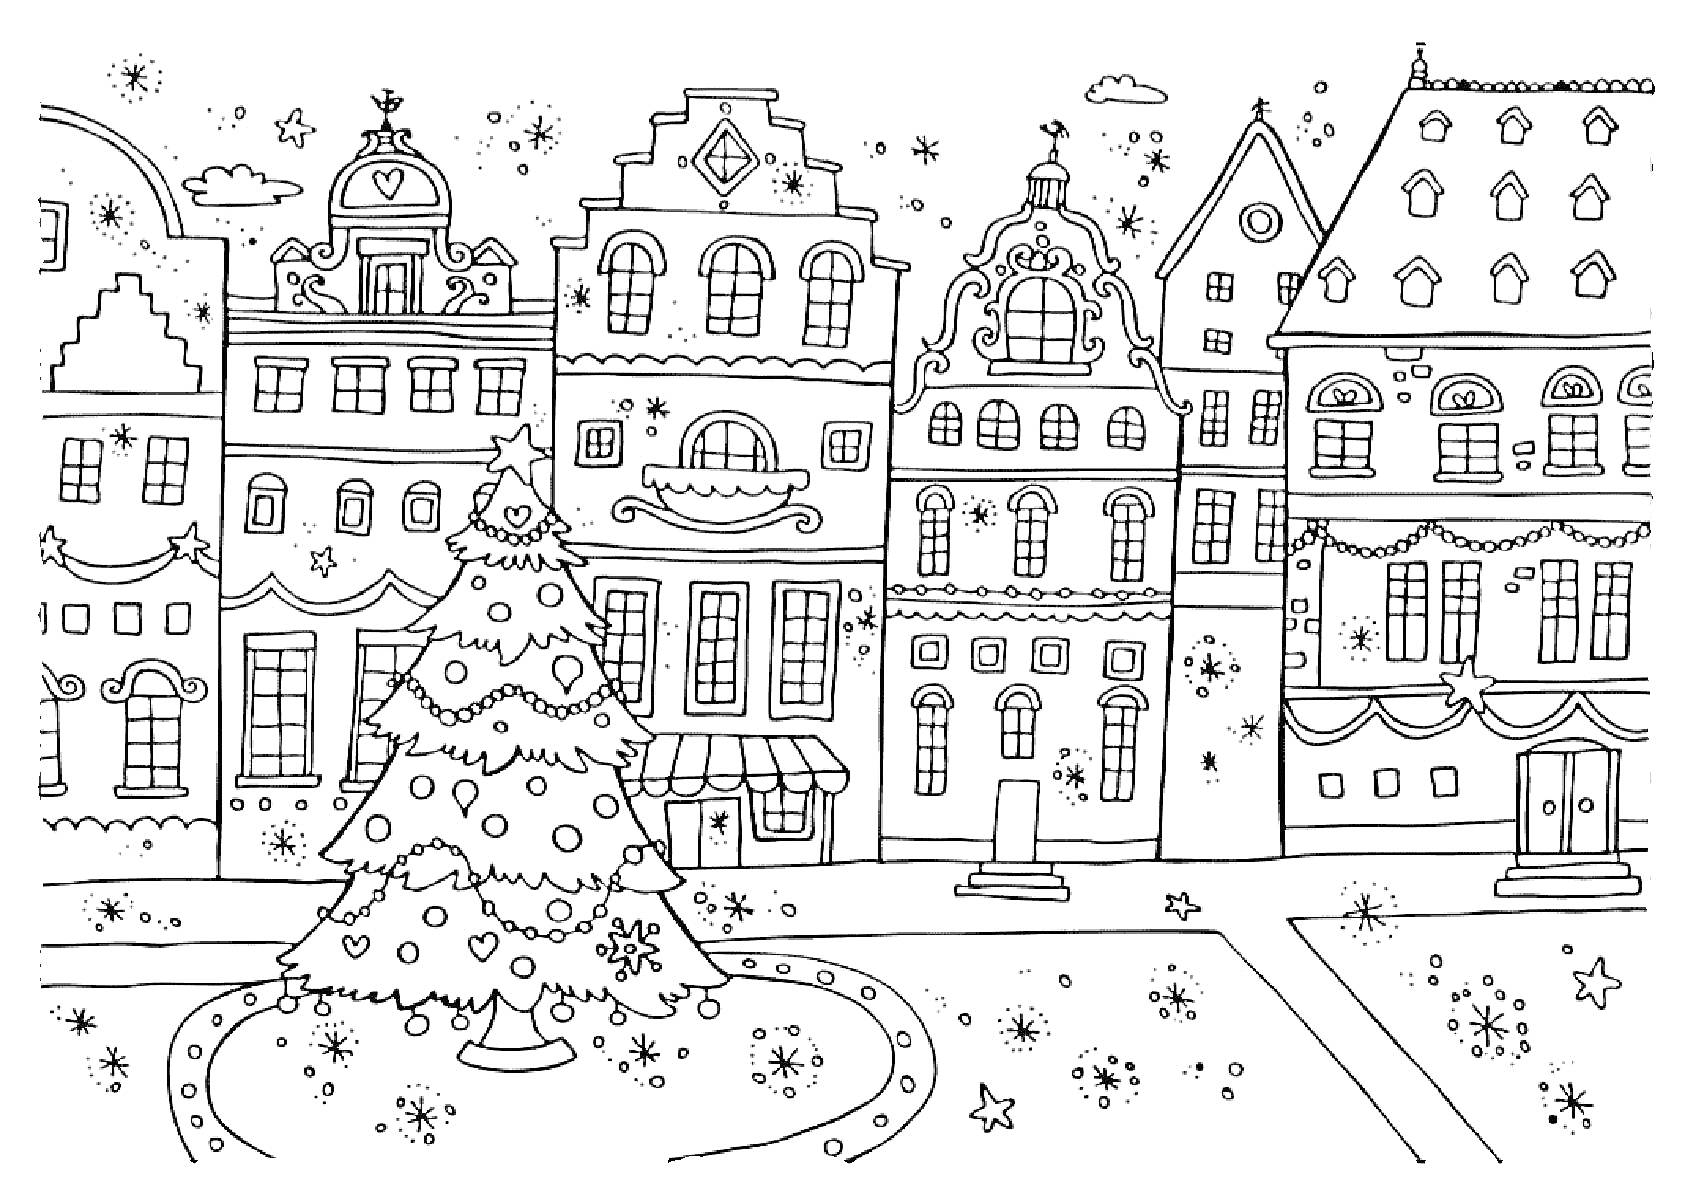 Рождественский город с ёлкой и зданиями: украшенная ёлка, старинные здания, витрина с навесом, окна, двери, снежинки, звёзды, рождественские украшения